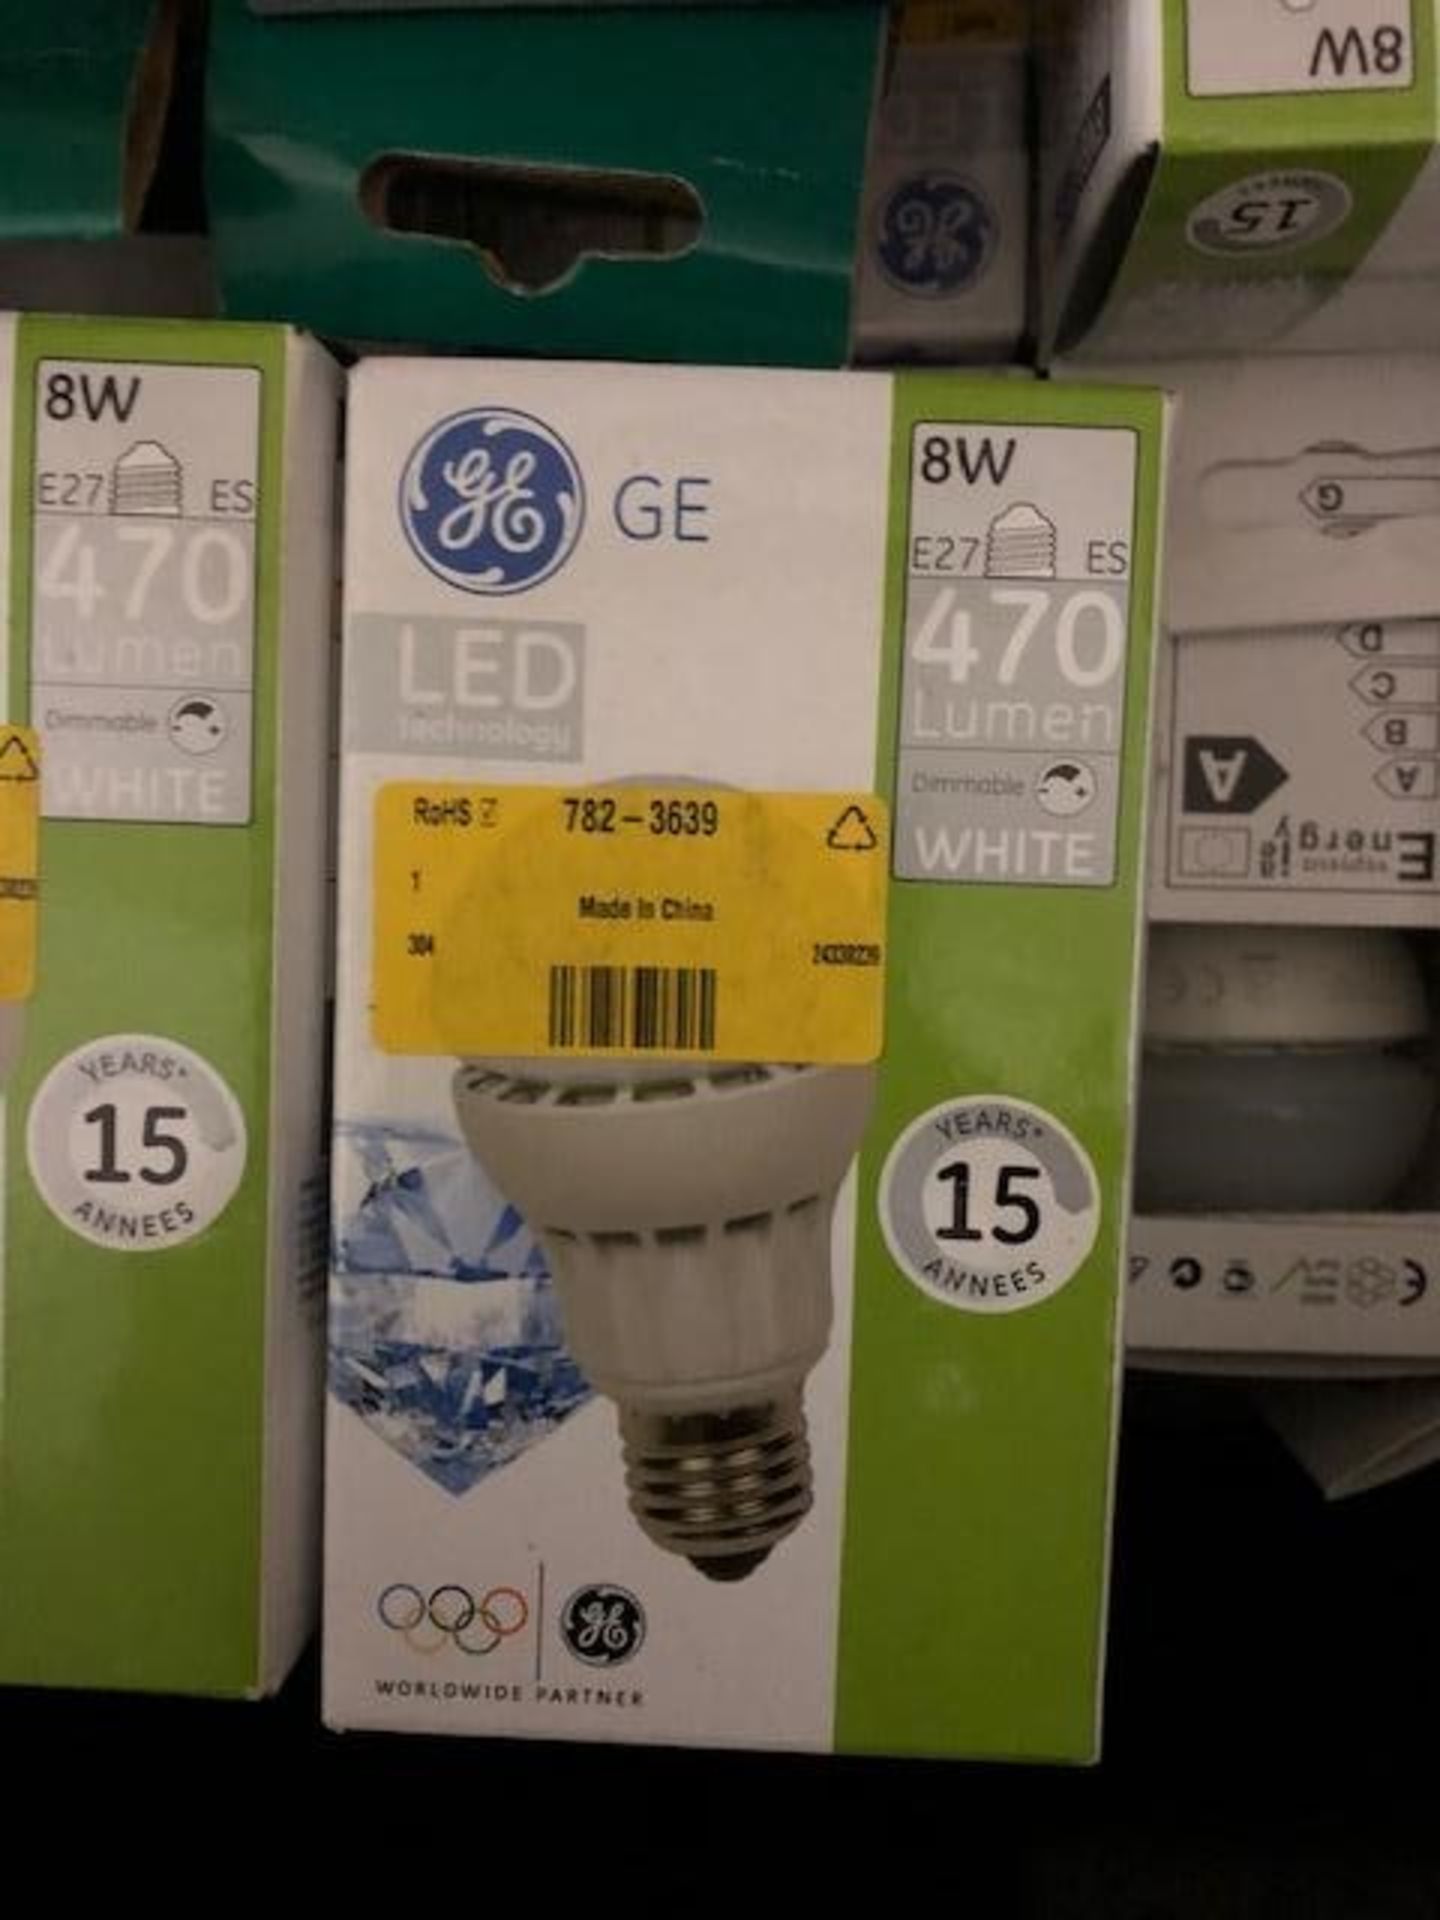 16 x GE E27 GLS LED Bulb 8 W, GLS shape